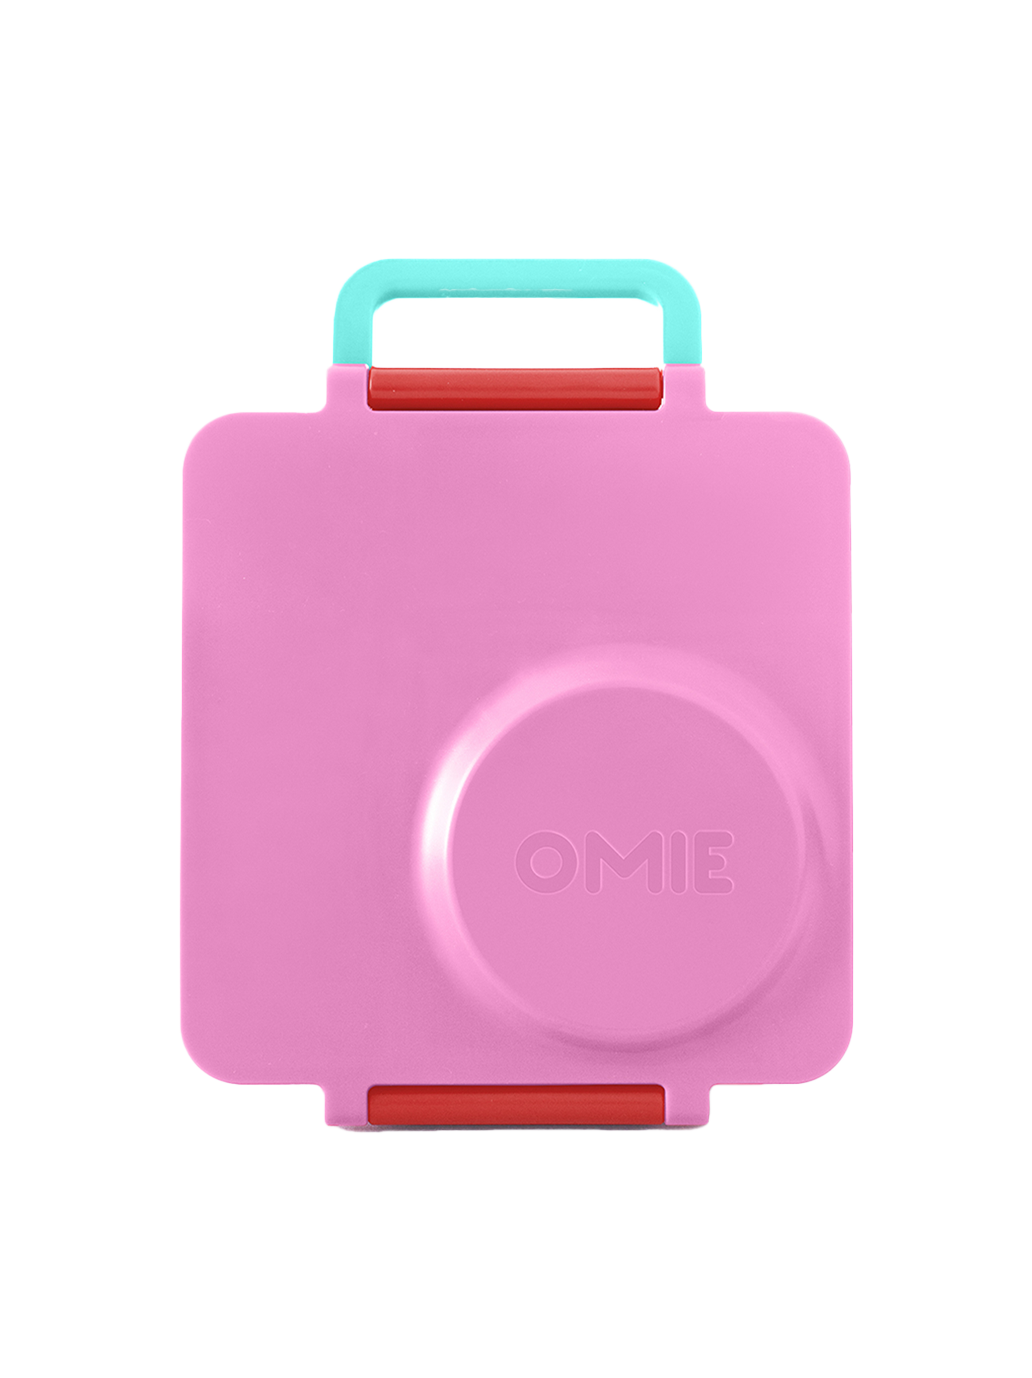 Portapranzo OmieBox con thermos e scomparti